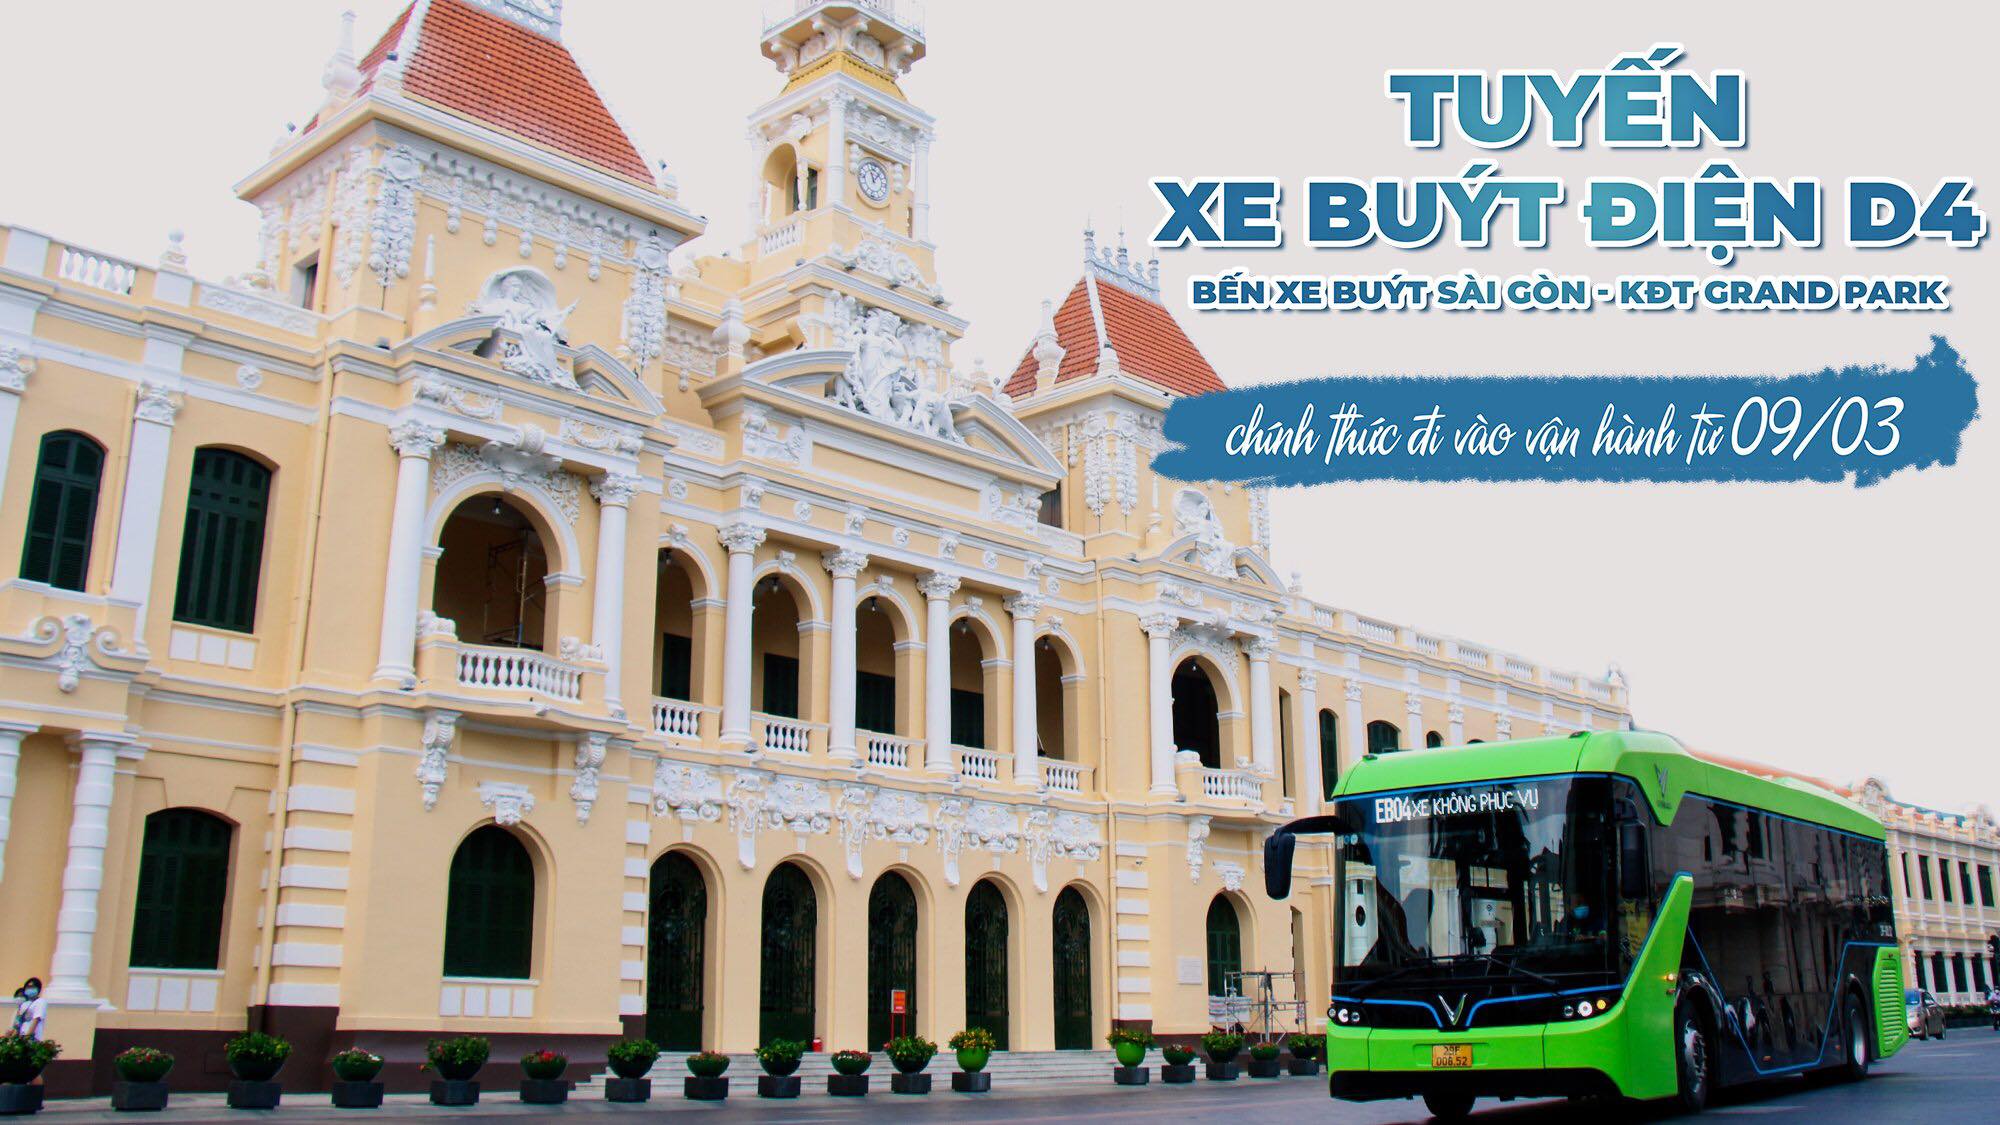 VinBus chính thức vận hành tuyến xe buýt điện đầu tiên tại Thành phố Hồ Chí Minh